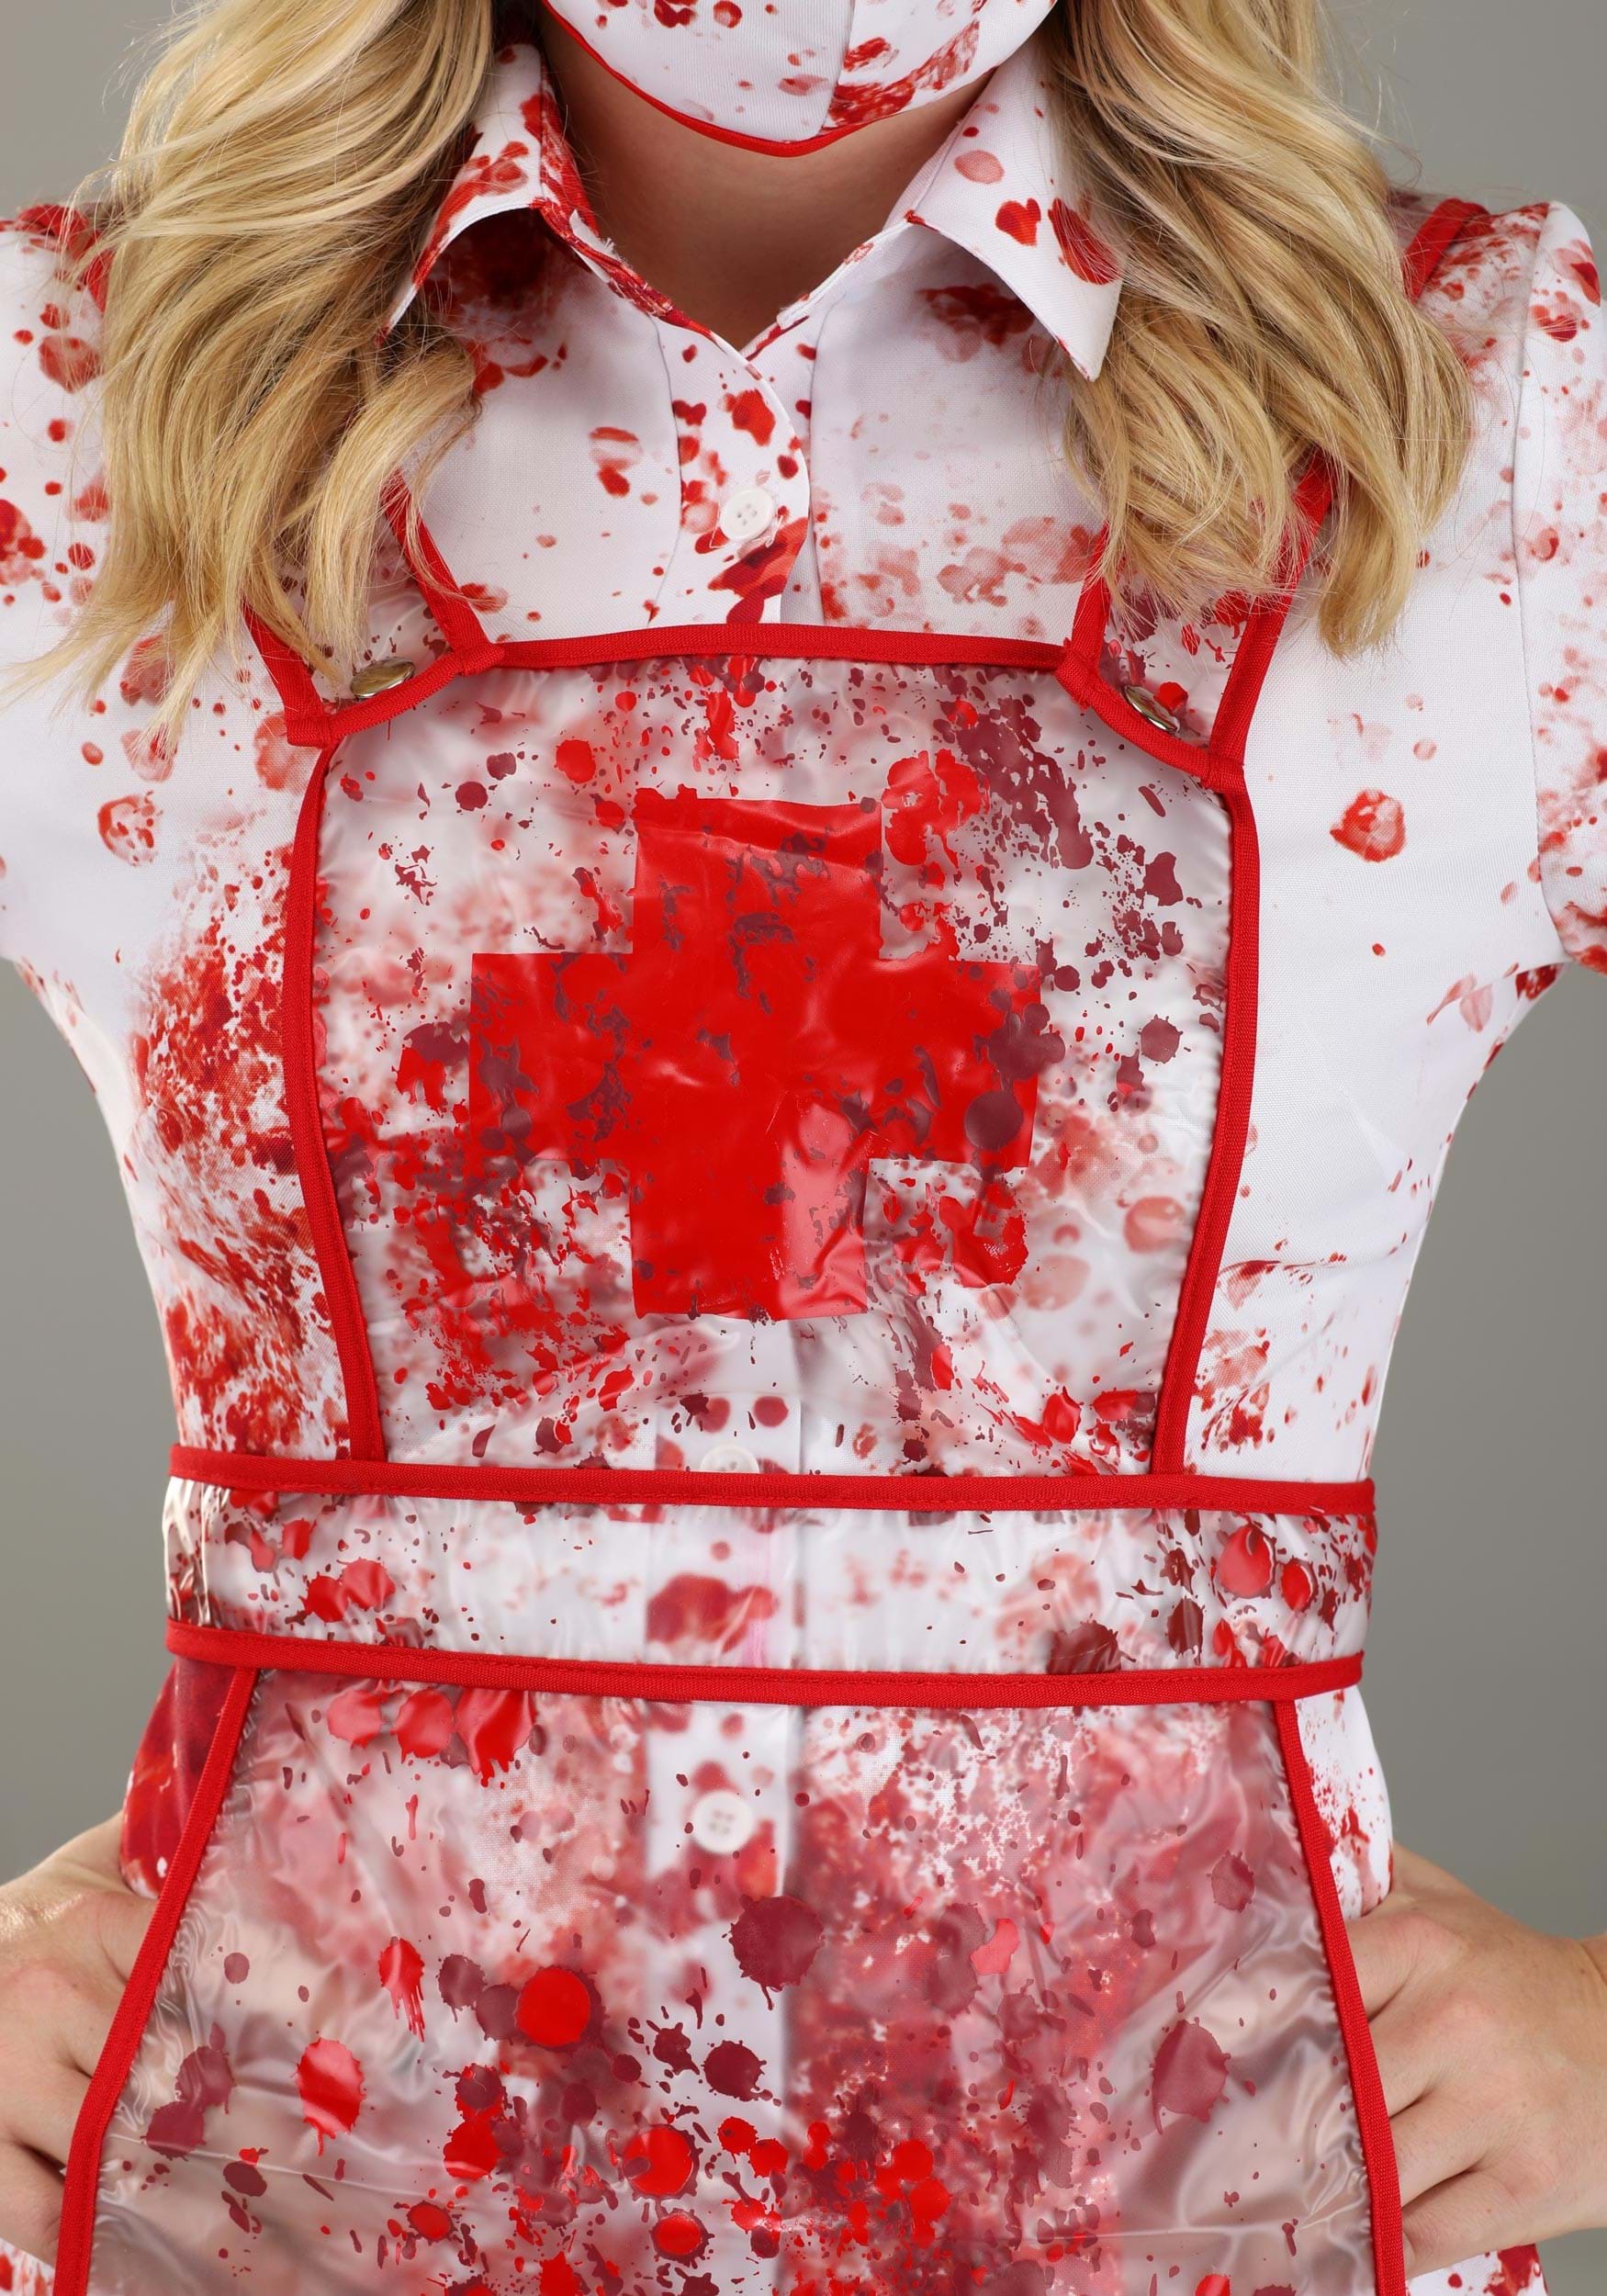 Blood Splatter Women's Nurse Fancy Dress Costume